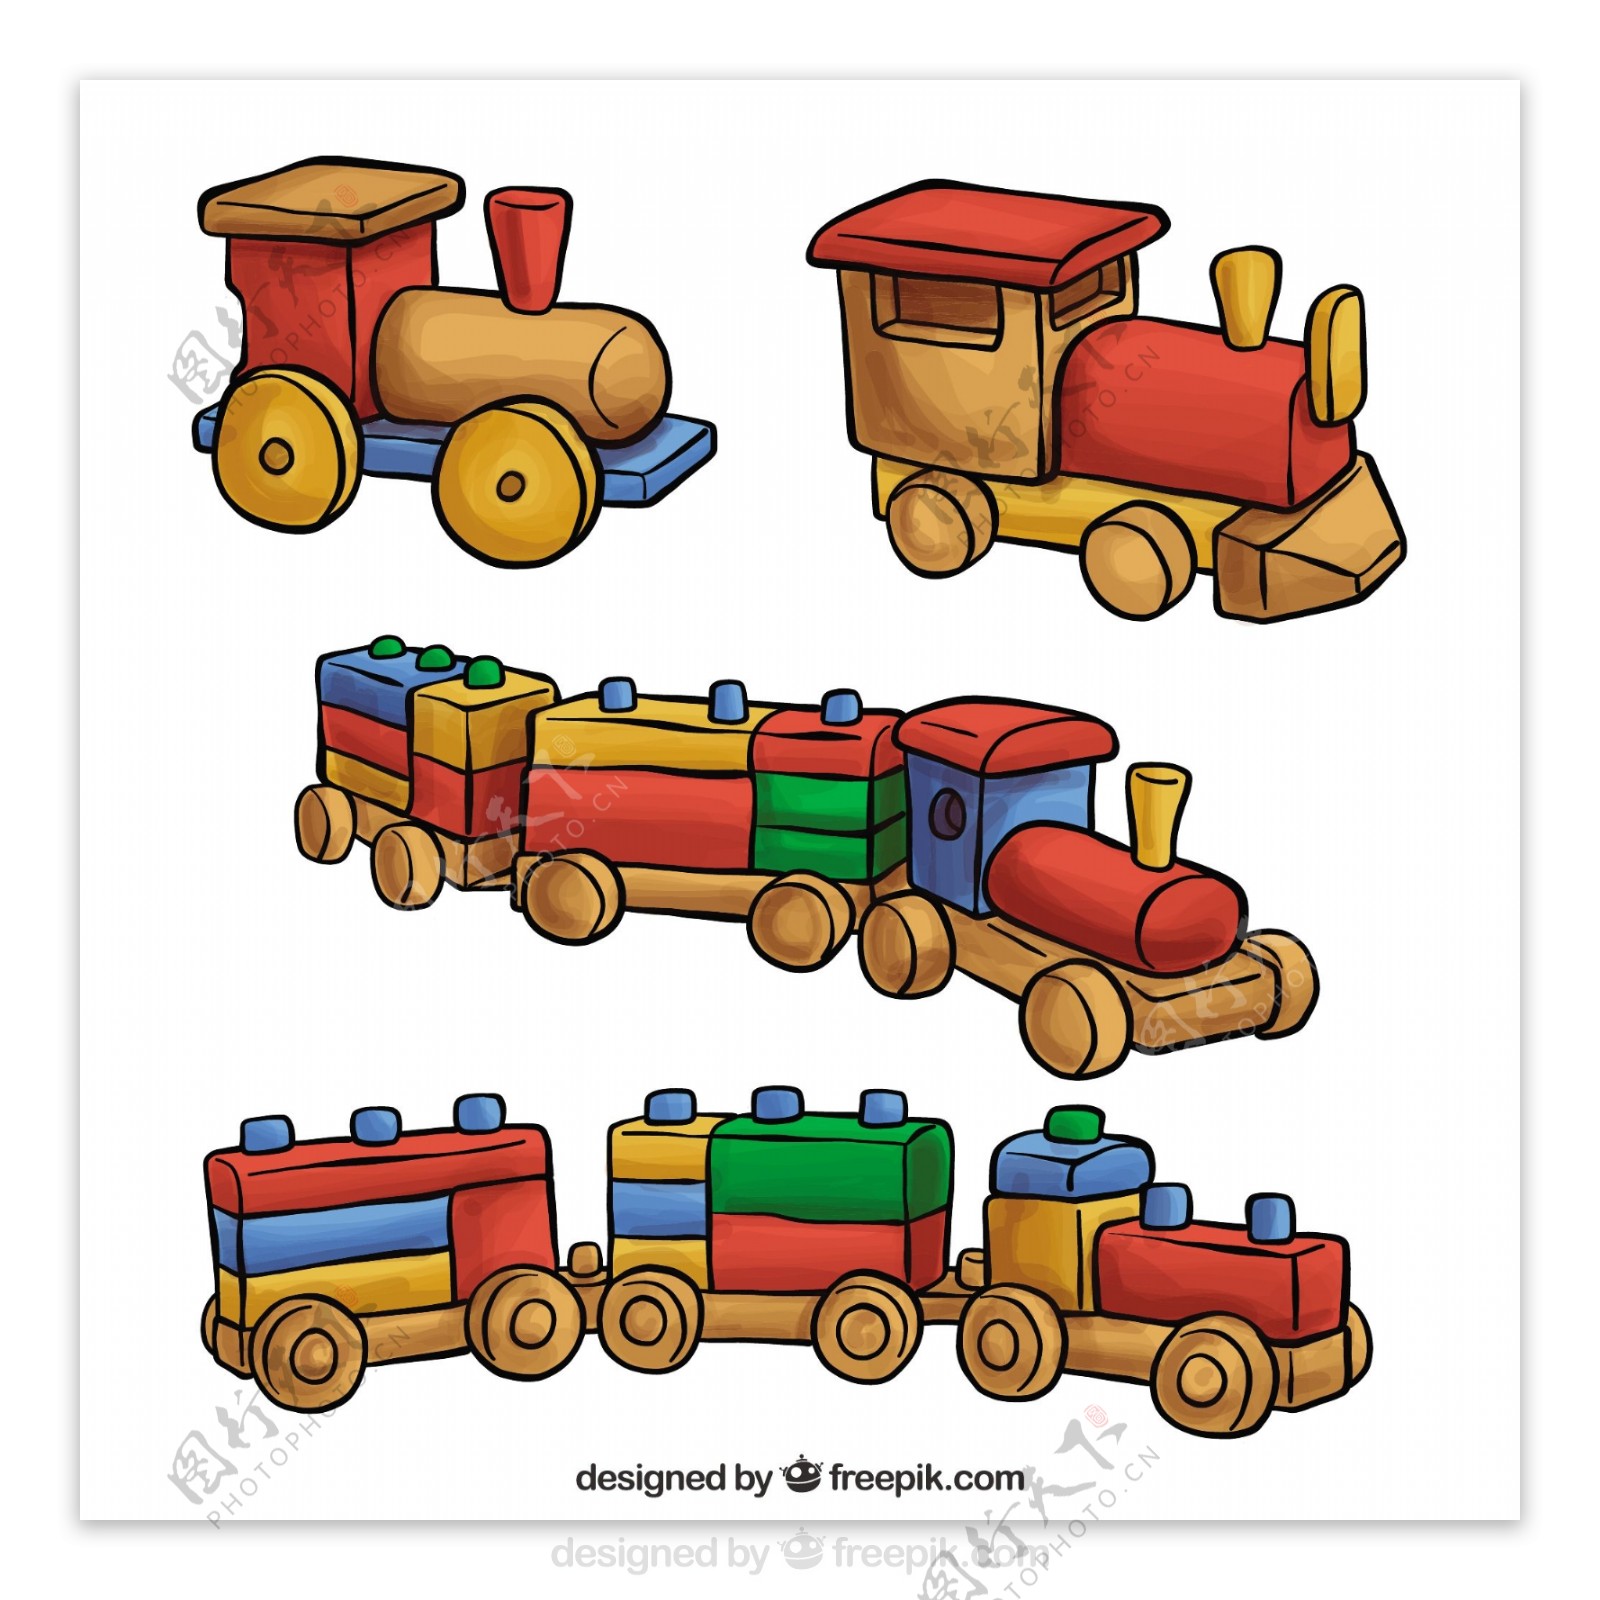 可爱的玩具火车矢量素材